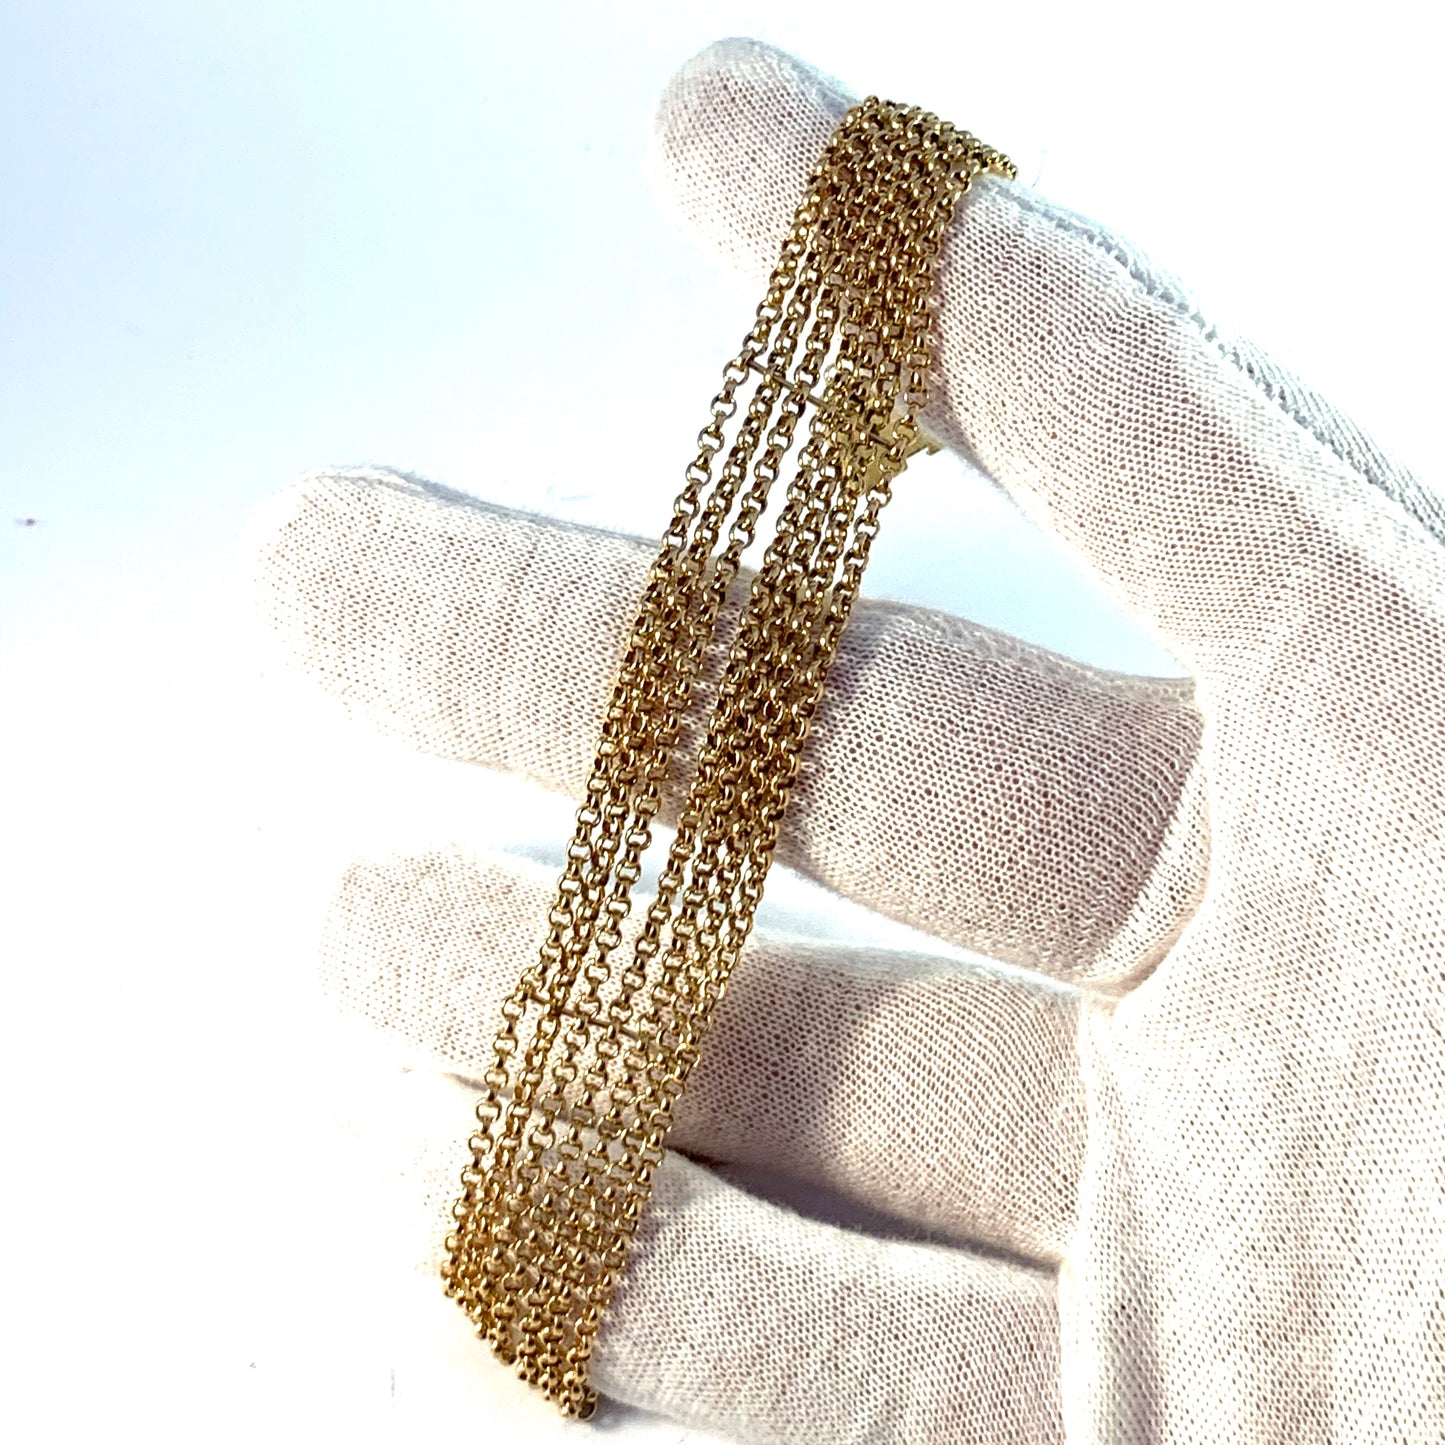 A.G Dufva, Sweden 1907 Antique 18k Gold 7-Strand Bracelet. 25.4gram